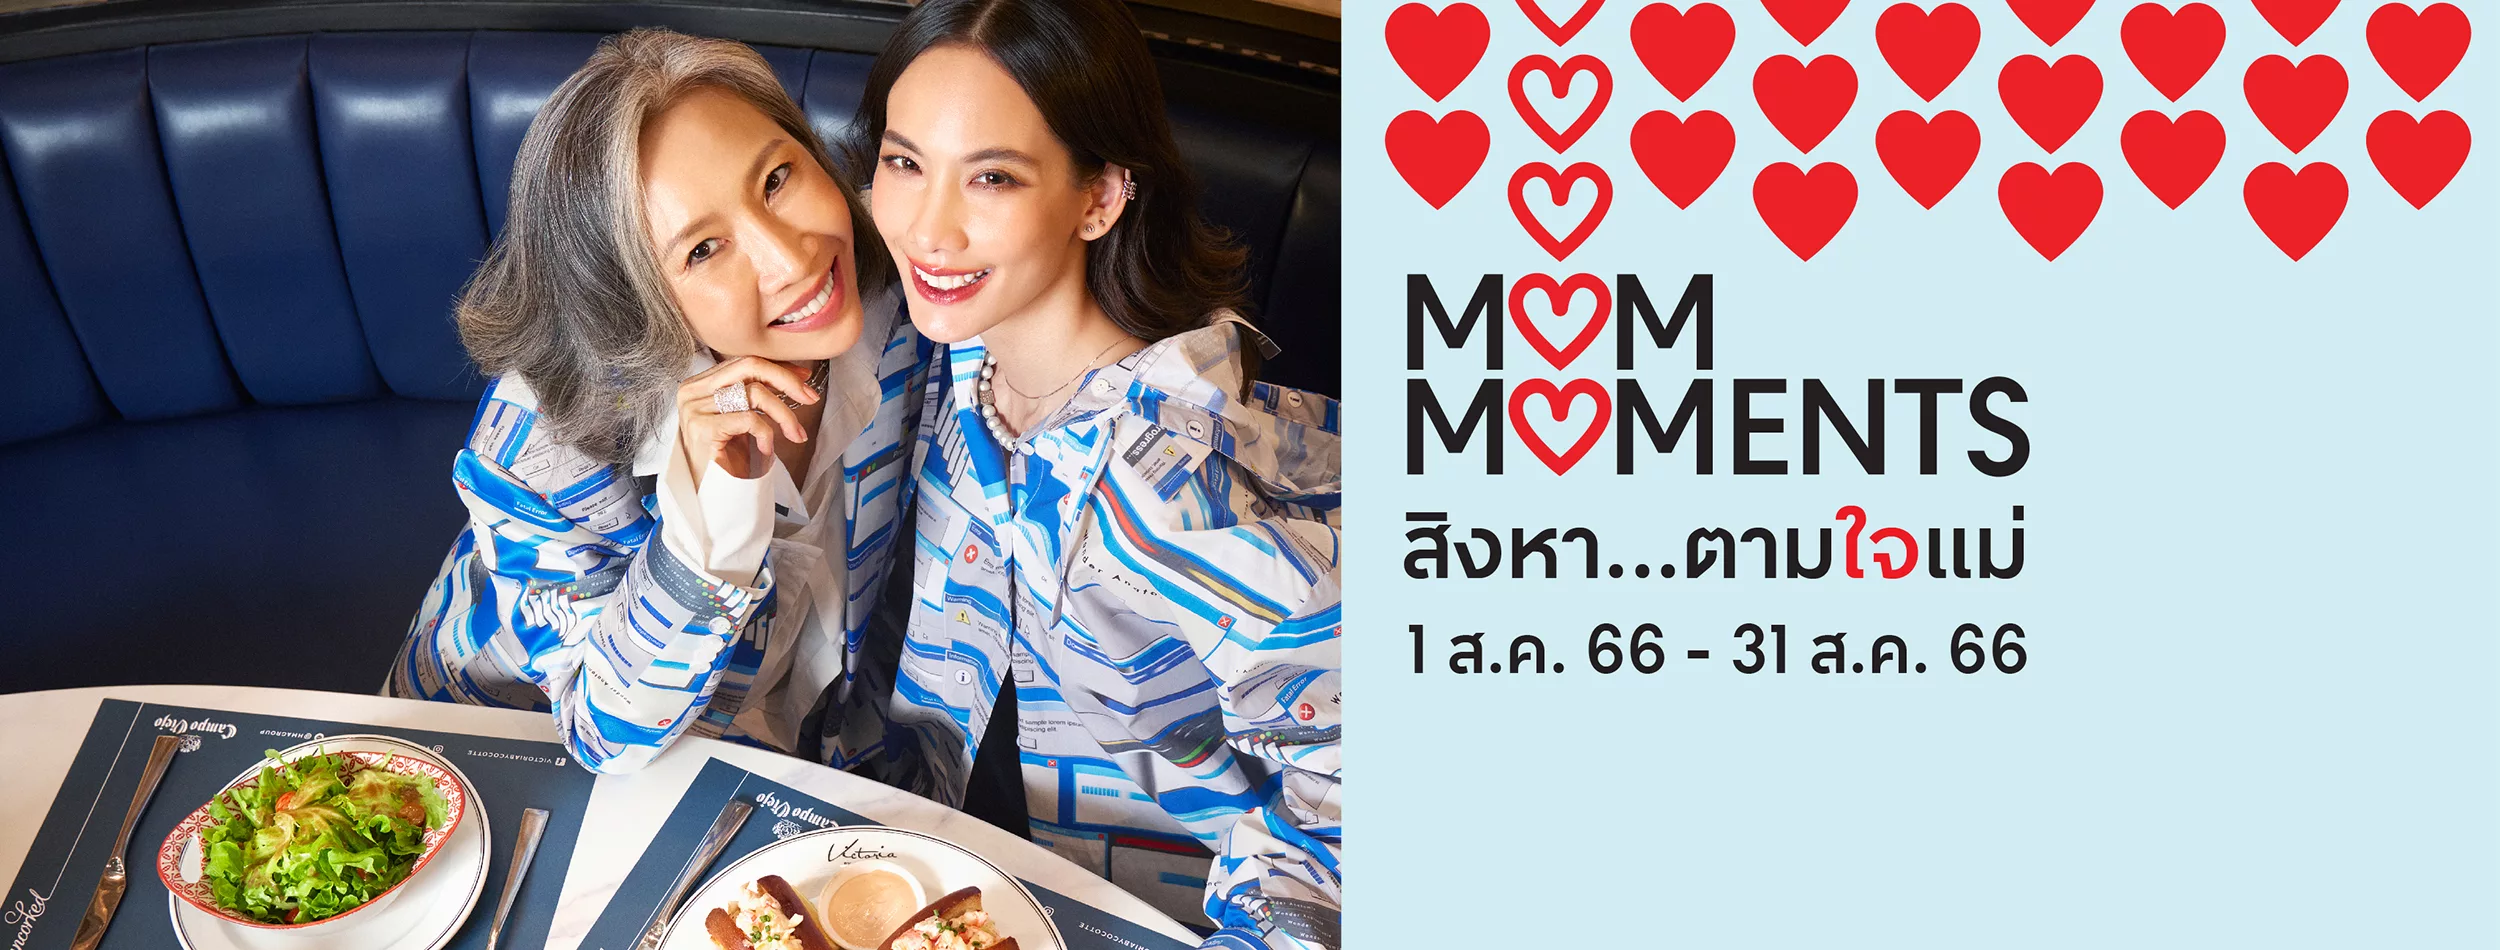 Central Chiangmai Airport มอบแคมเปญพิเศษ Mom Moments กินฟรีตามใจแม่ รวมโปรสุดปังจากร้านดัง พร้อมรับตั๋วหนังฟรี!